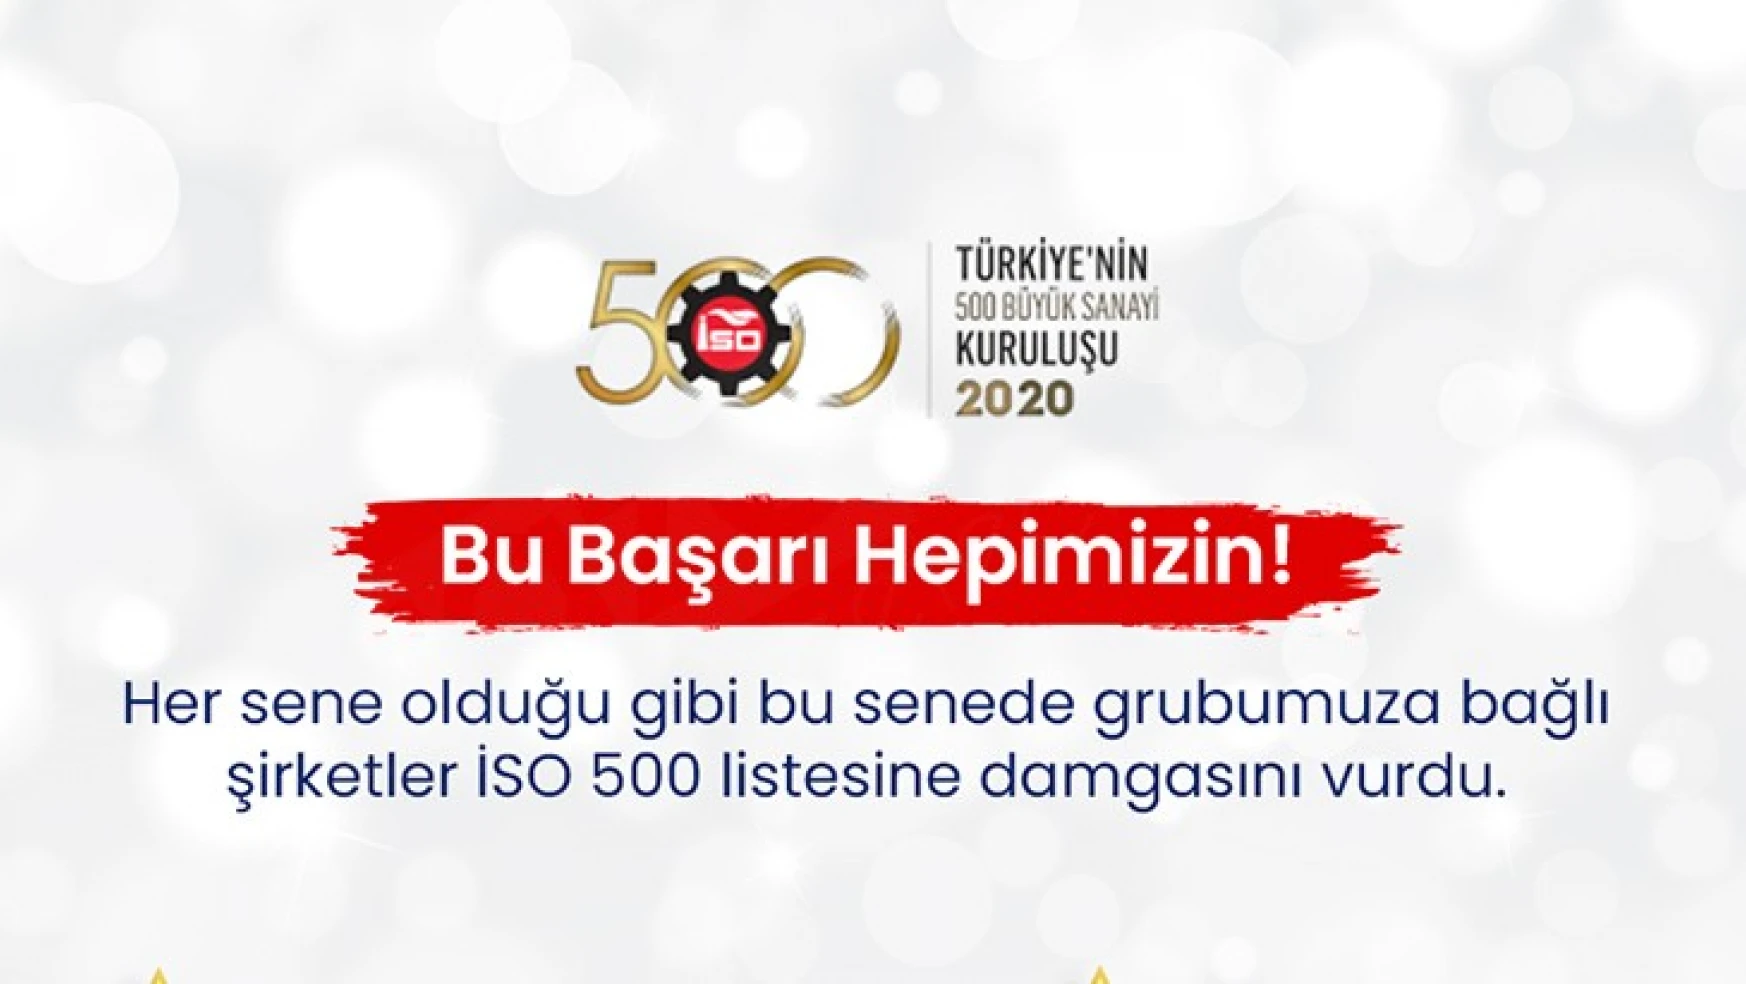 KİPAŞ Holding, İSO 500'de yine zirvede